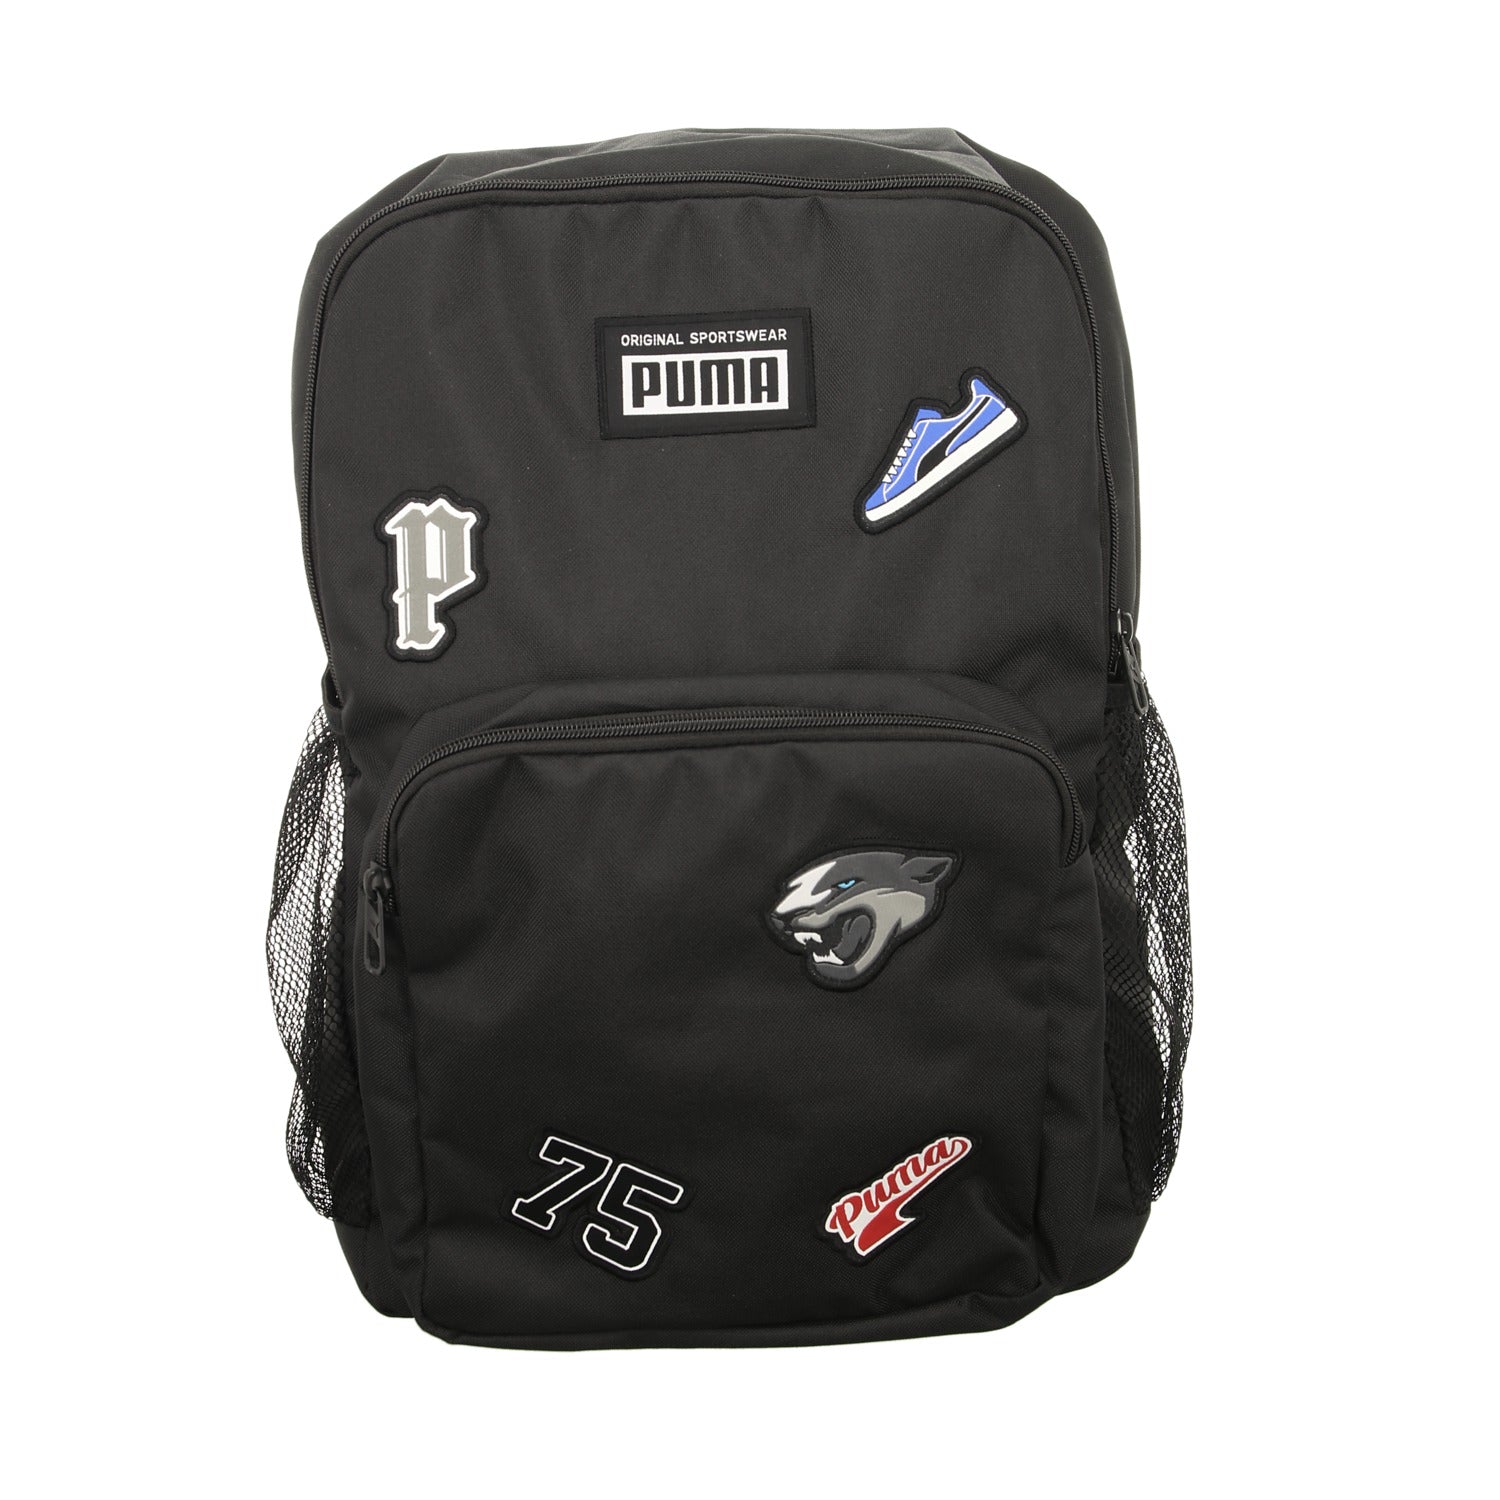 Puma Sportrucksack Patch Backpack